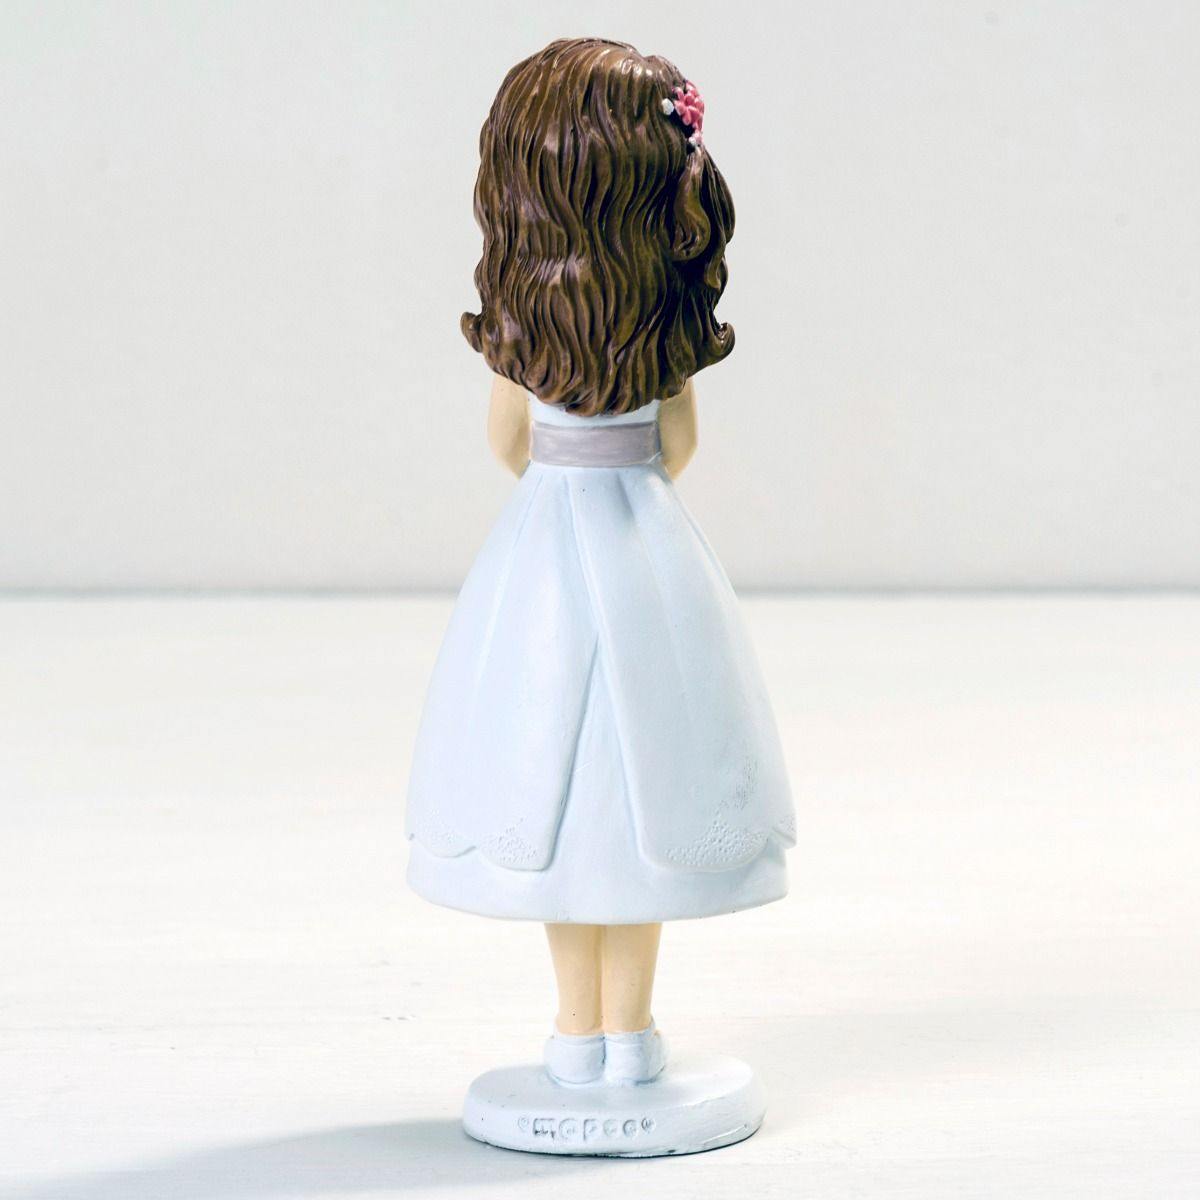 Figura de pastel comunión Niña vestido cortito 16.5 cm - Regalos originales personalizados - DE MOI À TOI |DMAT